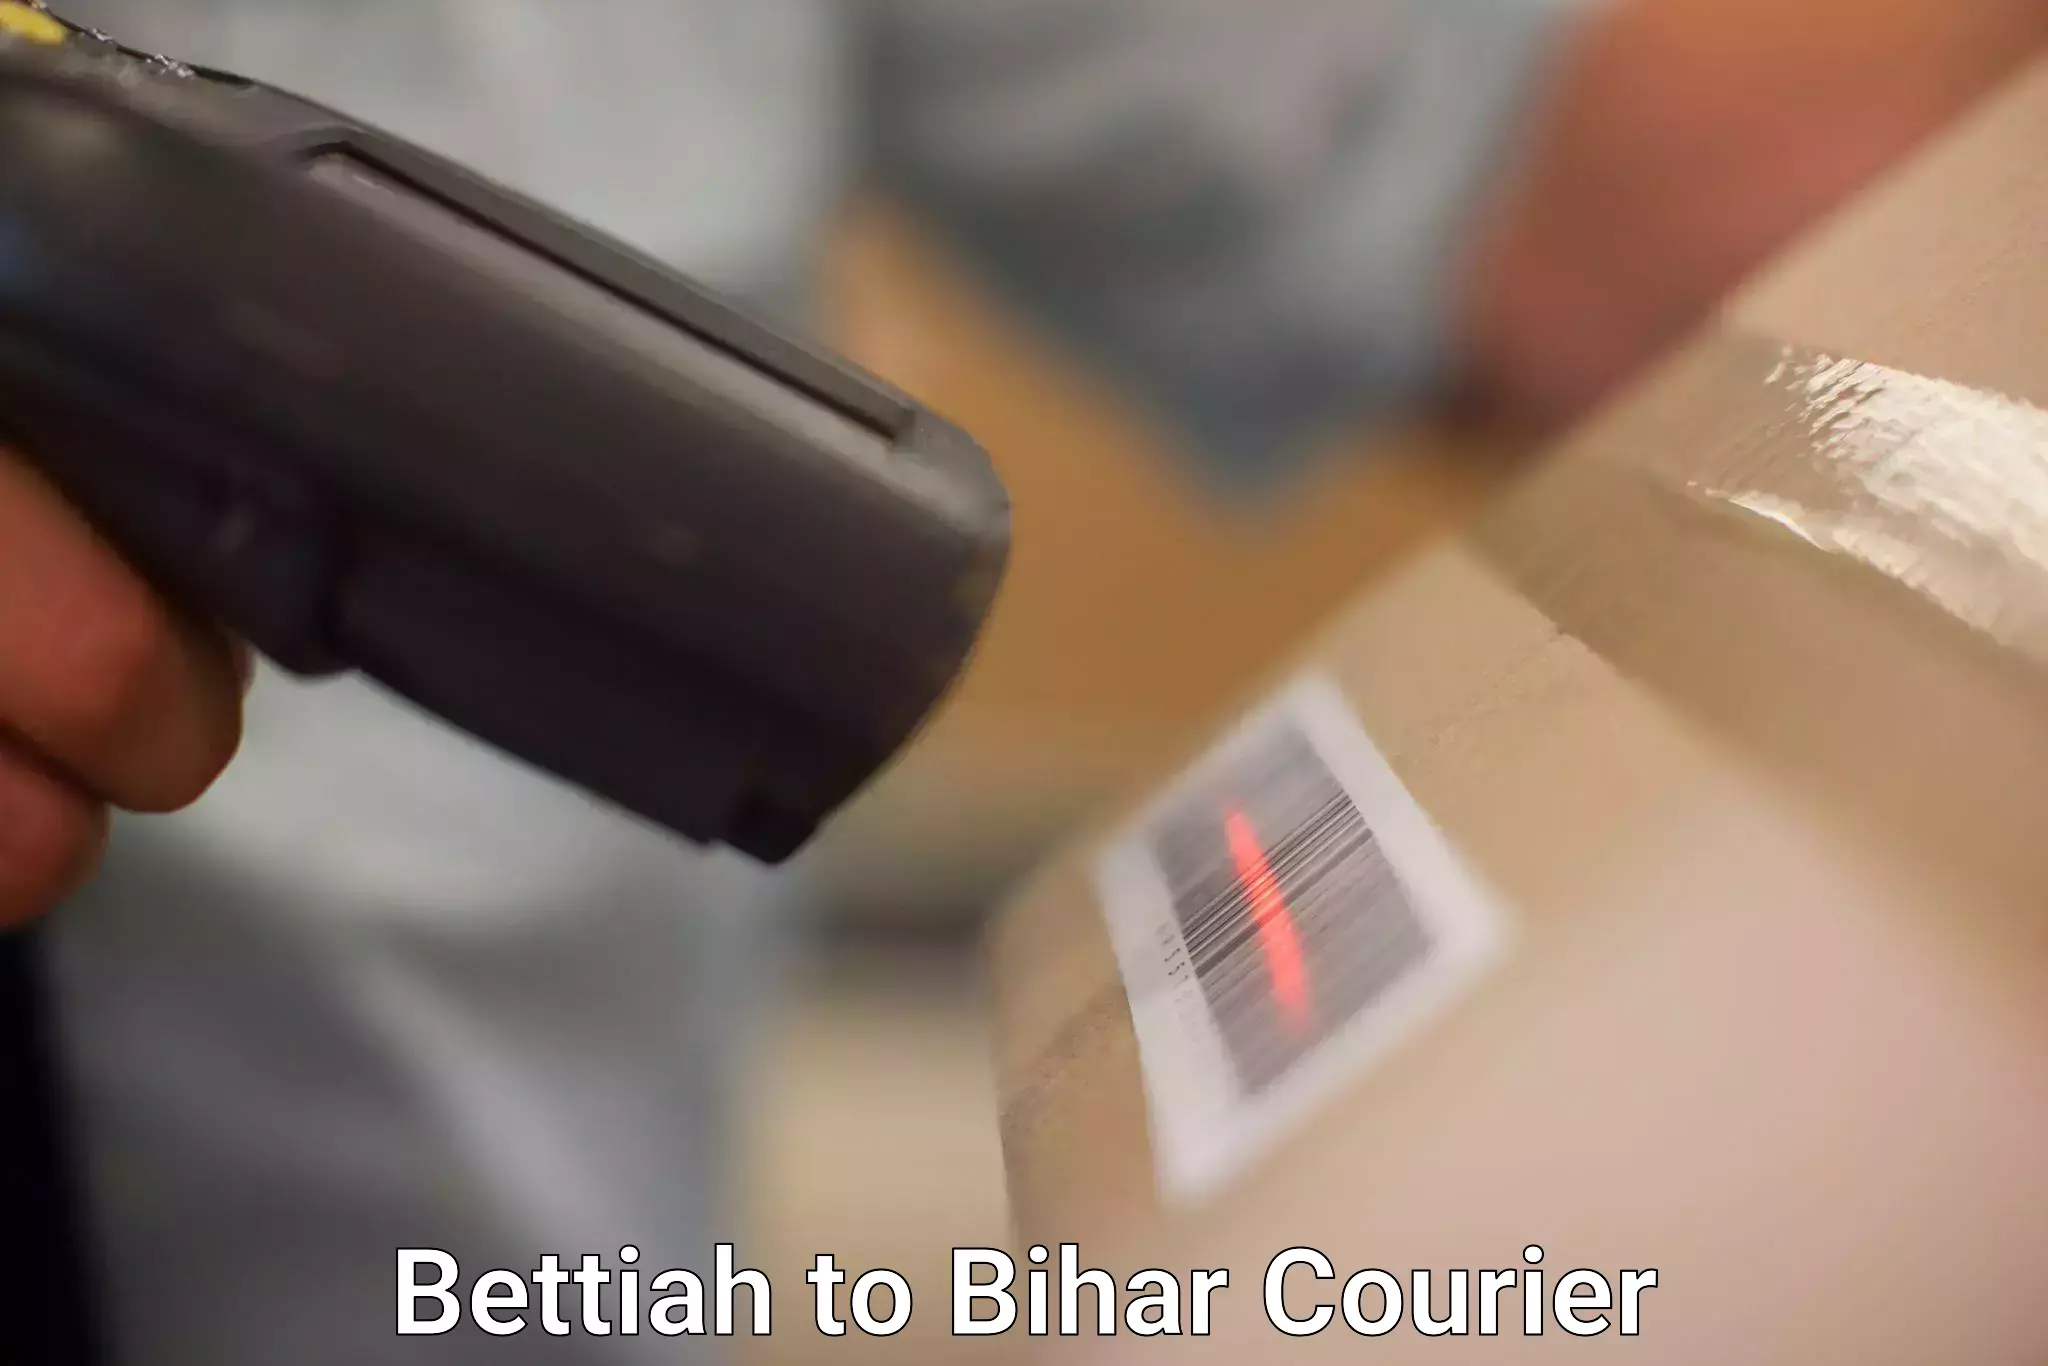 Bulk shipping discounts in Bettiah to Manjhaul